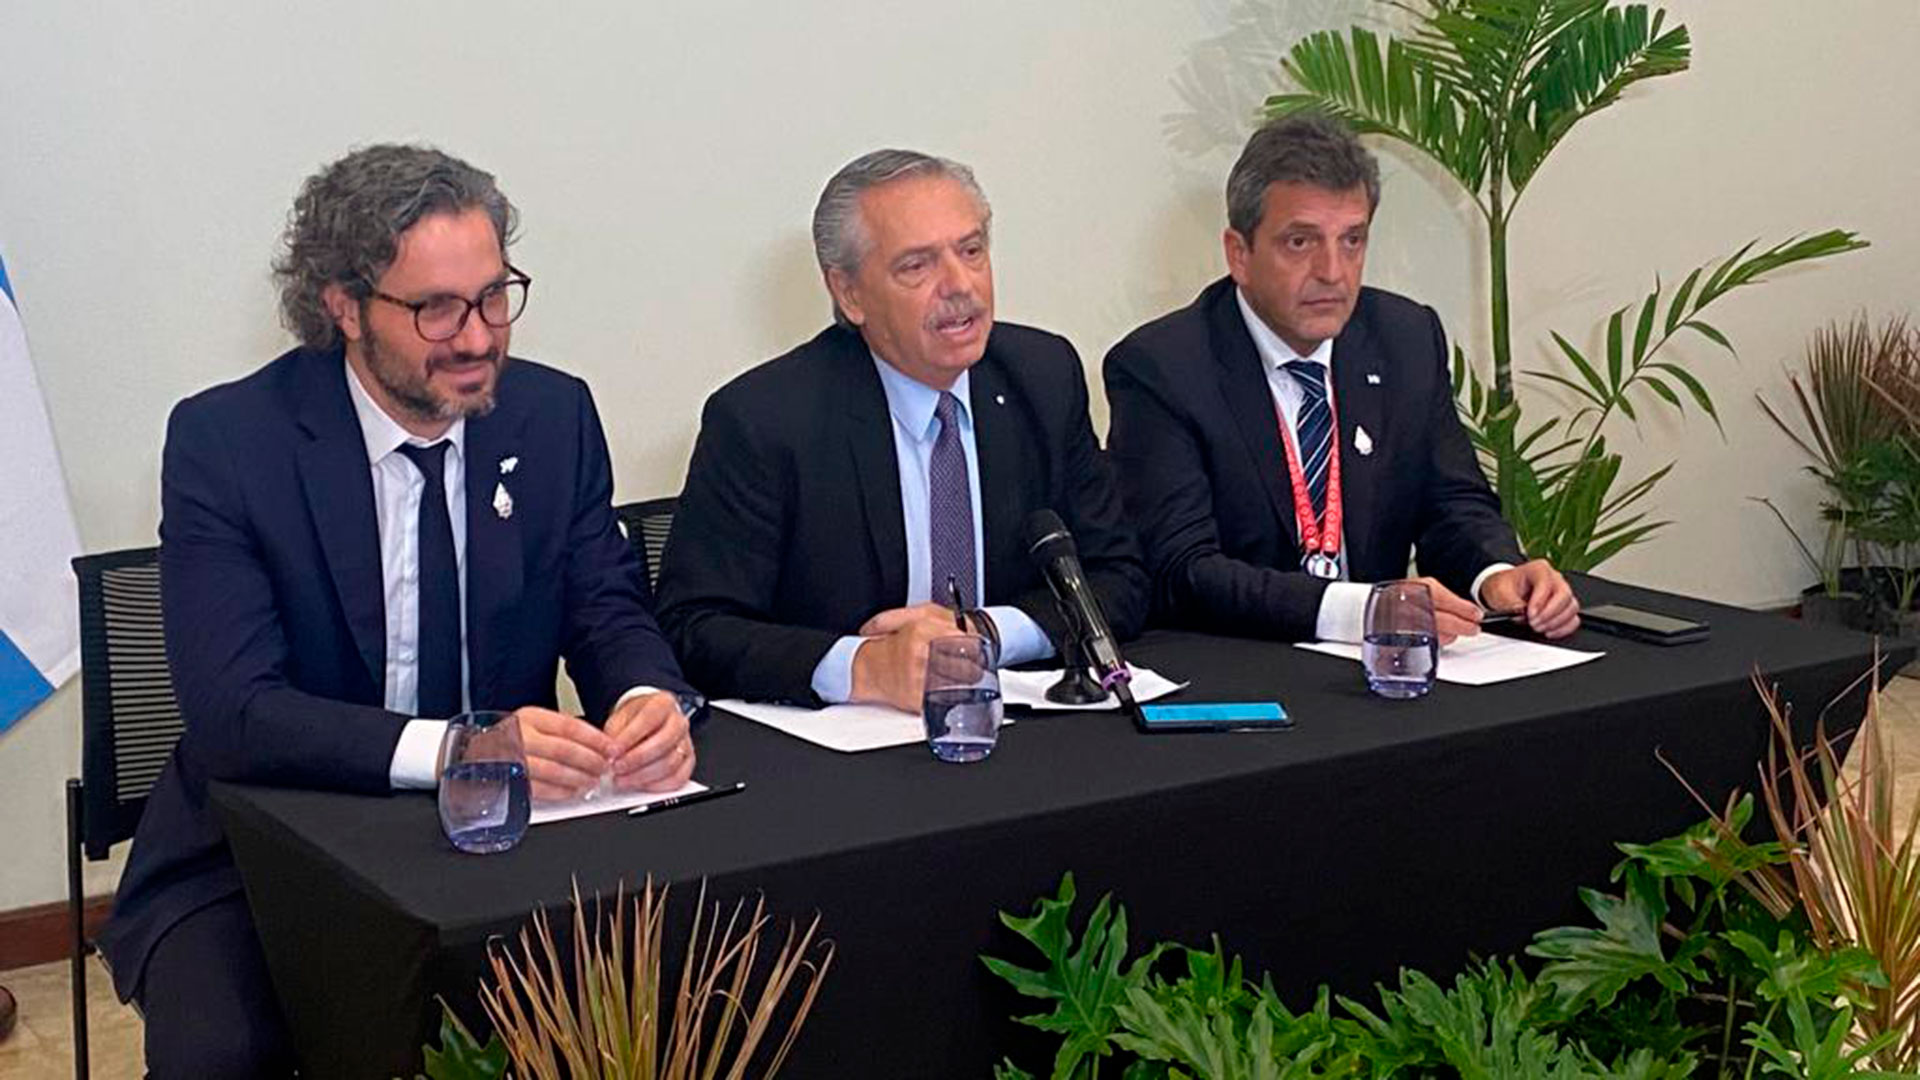 Santiago Cafiero, Canciller argentino, junto al presidente Alberto Fernández y el ministro de Economía, Sergio Massa